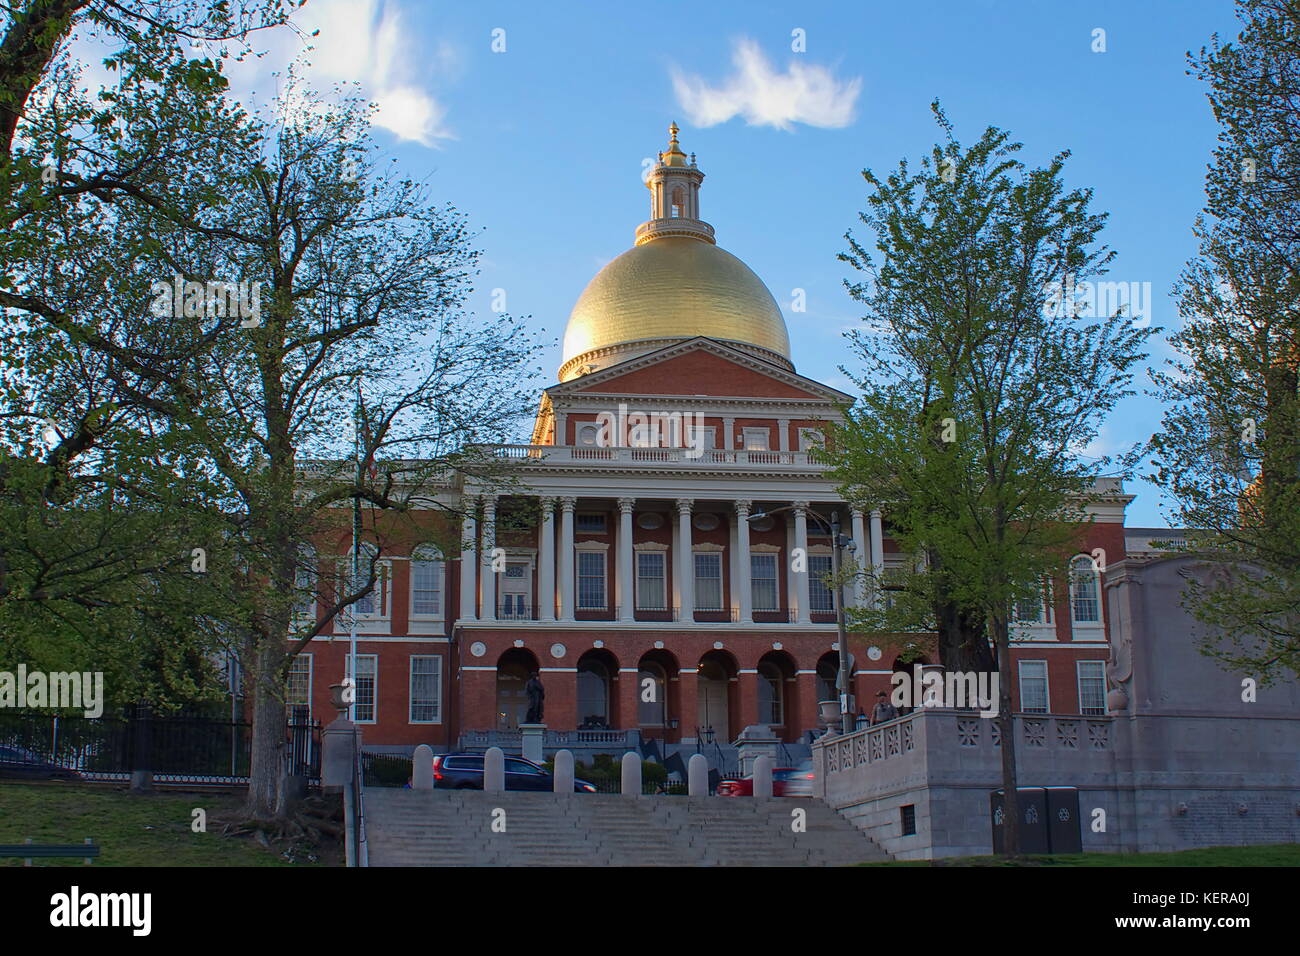 La casa del estado de Massachusetts en Boston. Foto de stock